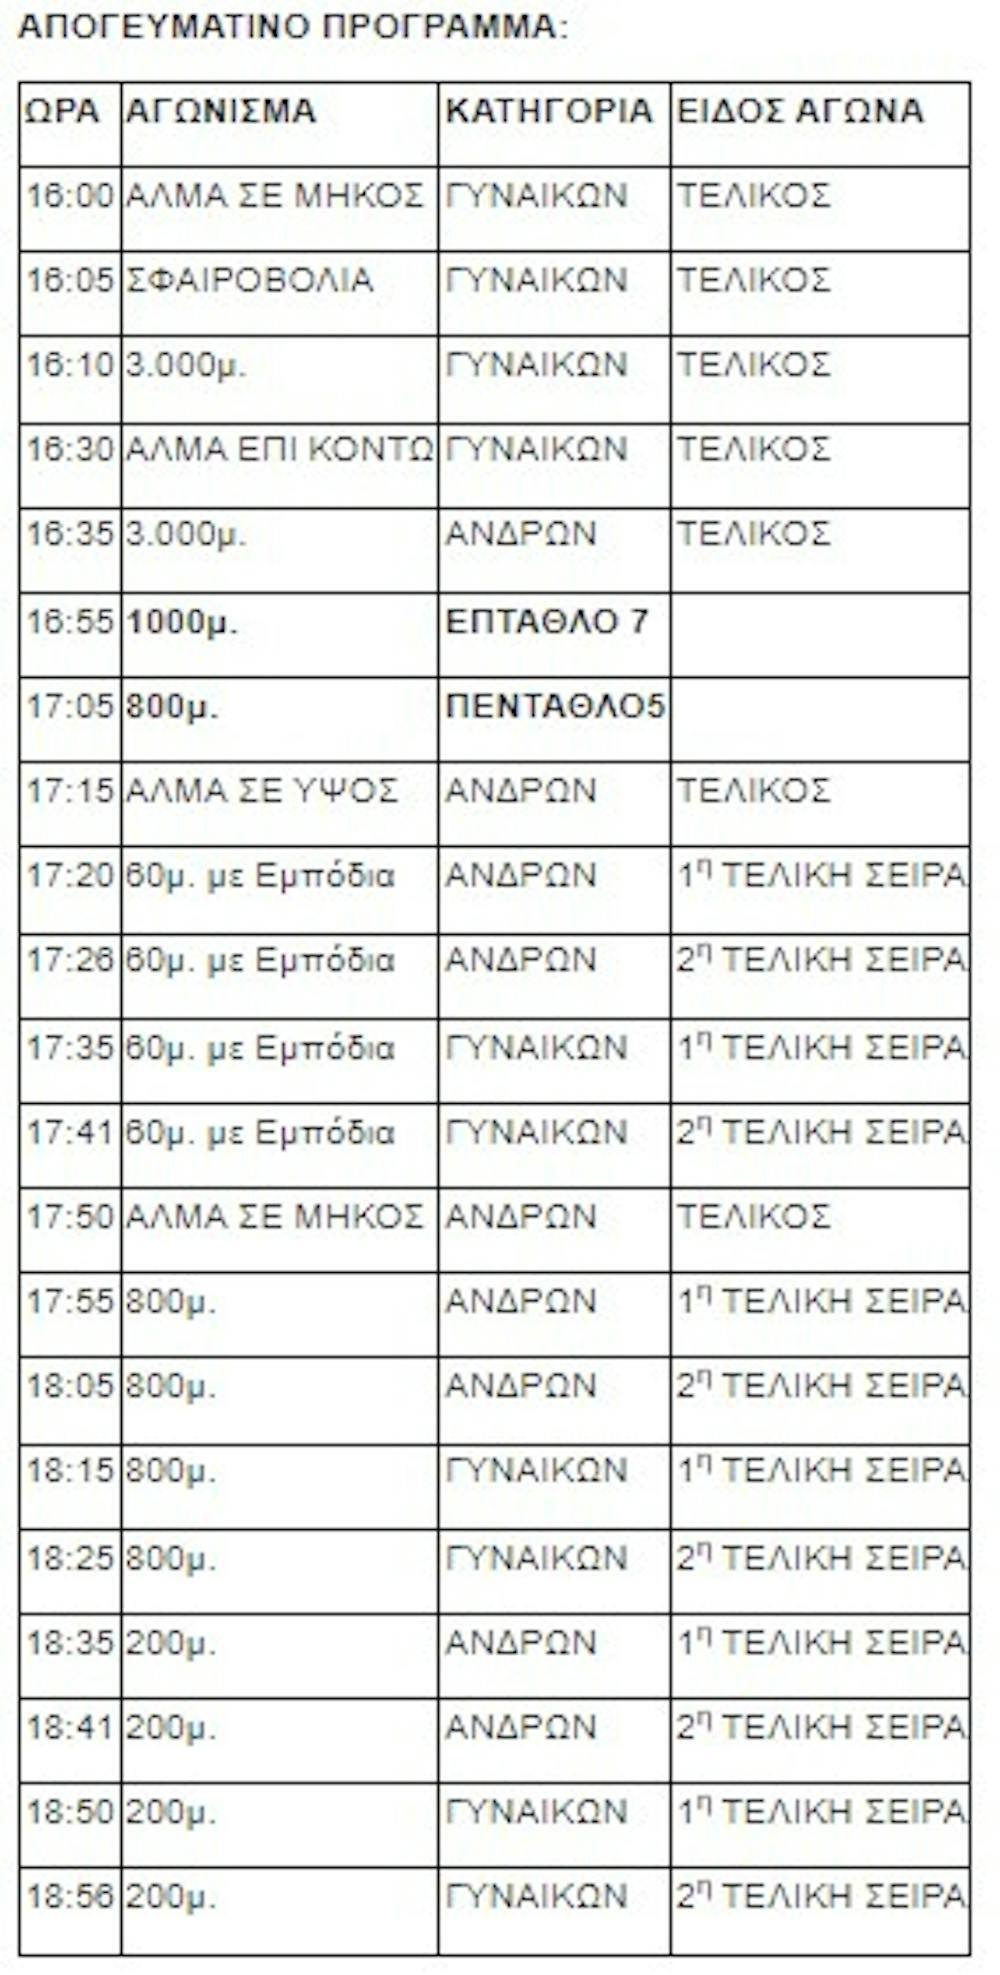 Το πρόγραμμα του Πανελληνίου Πρωταθλήματος κλειστού – Όσα ισχύουν για την είσοδο στο ΣΕΦ runbeat.gr 